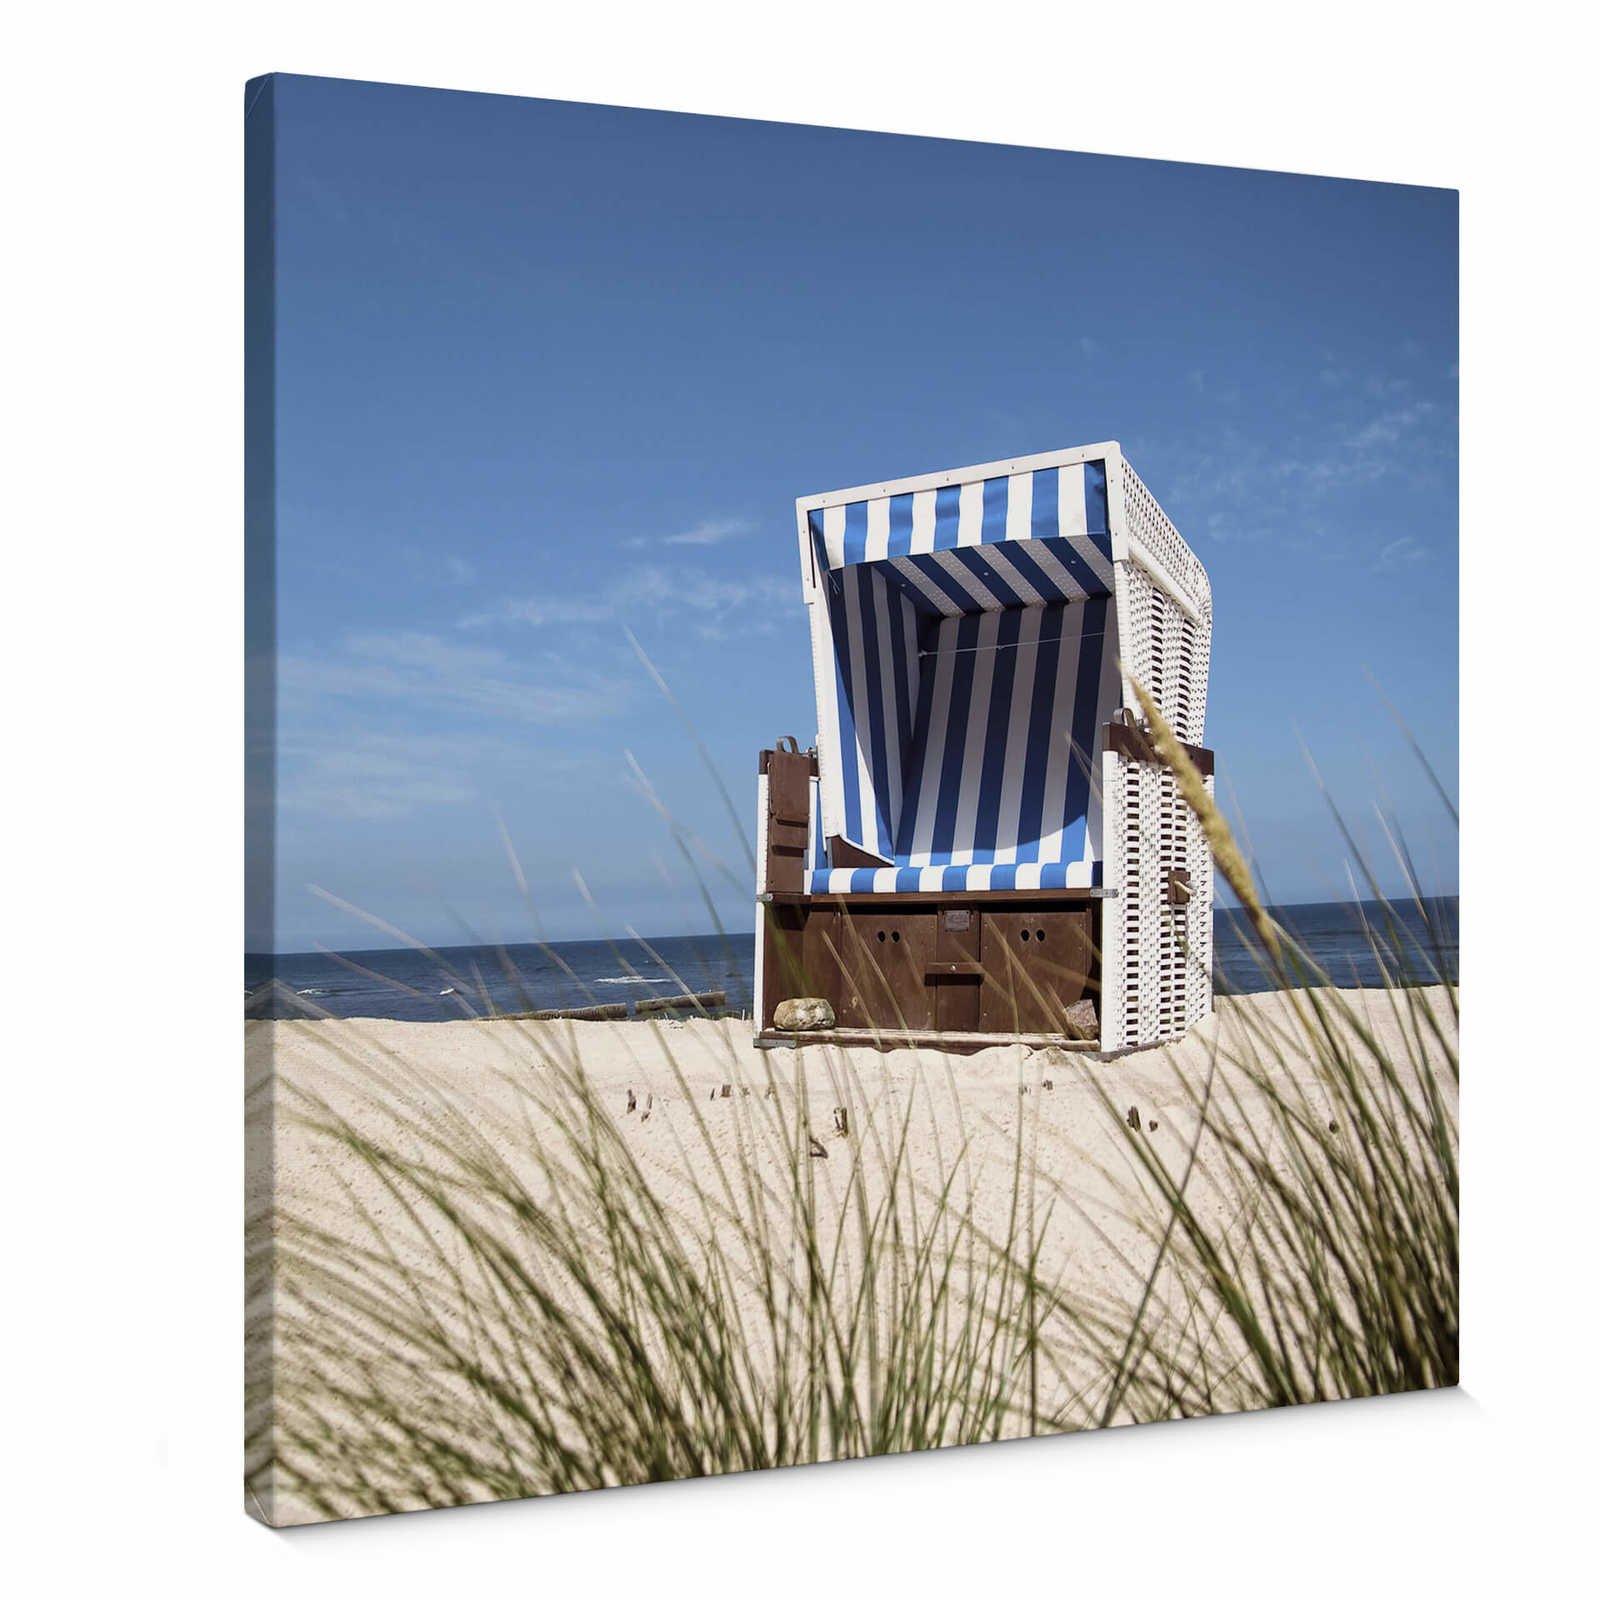 Vierkant canvas schilderij strandstoel - 0,50 m x 0,50 m
